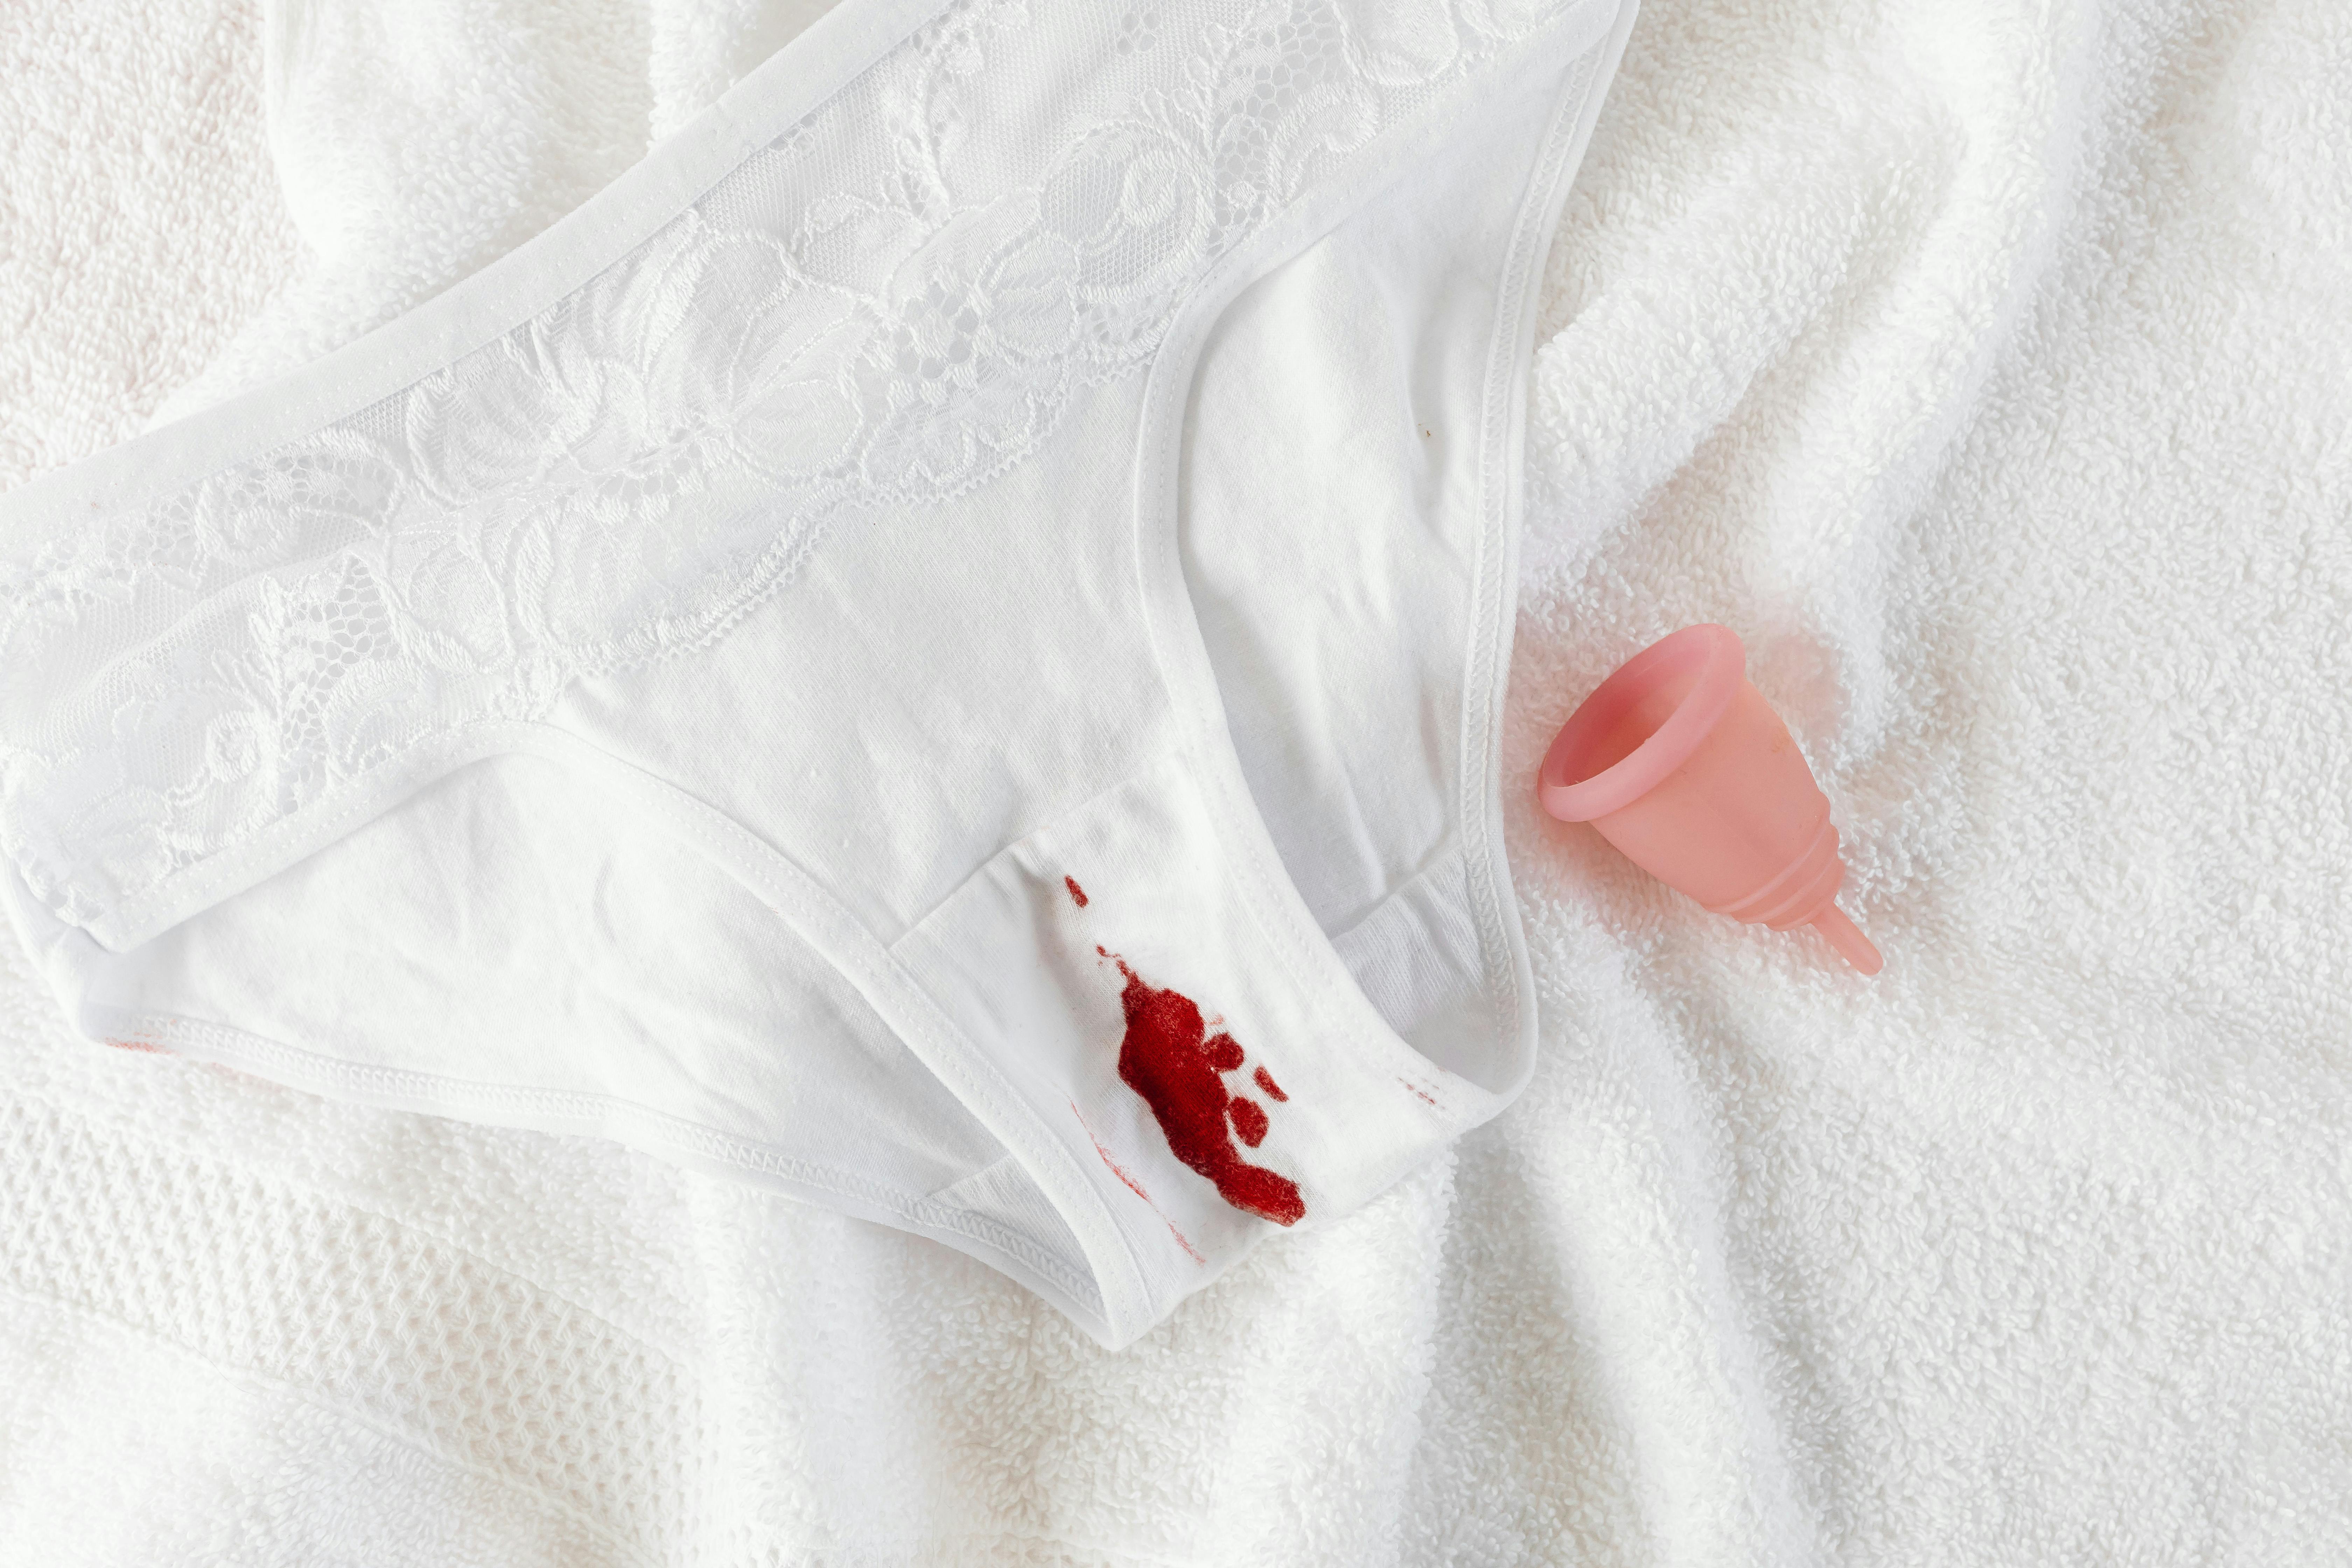 Les culottes menstruelles représentent une révolution dans la <b>gestion de la menstruation</b>, alignant commodité et <b>responsabilité environnementale</b>. Pour maximiser ces avantages, il est essentiel d’adopter des pratiques d’entretien qui <i>protègent</i> et prolongent leur <b>durabilité</b>. Un entretien adapté permet de préserver la <b>qualité</b> des matériaux, garantissant que les culottes restent fonctionnelles et confortables plus longtemps. Il est recommandé de rincer les culottes à l’eau froide peu après leur utilisation, pour prévenir les taches et les odeurs. Par ailleurs, une attention particulière devrait être accordée au choix des détergents, en privilégiant ceux qui sont doux et <i>écologiques</i>.</p>
<p>En considération de l’<b>impact écologique</b>, chaque aspect de l’entretien doit être réfléchi pour minimiser la consommation d’eau et d’énergie. Le lavage à basse température est préférable, et l’usage répété de produits chimiques agressifs doit être évité. Cela non seulement préserve l’intégrité des fibres, mais contribue également à réduire l’empreinte écologique associée à l’entretien des produits menstruels. Les routines d’entretien devraient ainsi être ajustées pour concilier <b>efficacité</b> et <i>respect</i> de l’environnement.</p>
<p>Concernant le lavage et le séchage, des méthodes <b>écologiques</b> et douces sont à privilégier pour maintenir l’<i>efficacité</i> des culottes menstruelles et optimiser leur longévité. Le séchage à l’air libre, par exemple, est une technique qui préserve la <b>structure</b> des fibres textiles tout en économisant de l’énergie par rapport à l’utilisation d’un sèche-linge. Les culottes menstruelles devraient également être tenues à l’écart de sources directes de chaleur et de lumière du soleil intense lors du séchage, afin de maintenir la qualité des matériaux et de l’<b>élasticité</b>.</p>
<p>Adopter des routines de lavage conscientes et réfléchies non seulement <b>protège</b> votre investissement dans les culottes menstruelles, mais <i>amplifie</i> également leurs bénéfices environnementaux. Le choix de détergents biodégradables et la réduction de l’utilisation de l’eau et de l’énergie dans le processus de lavage et de séchage sont des stratégies cruciales pour minimiser l’impact écologique tout au long de la vie du produit.</p>
<p> » /><br />
L’<b>entretien</b> des culottes menstruelles est une étape cruciale pour maximiser leur durée de vie et leur efficacité, tout en maintenant leur impact écologique à un niveau bas. Il est essentiel de suivre des pratiques d’entretien qui soutiennent la durabilité des matériaux utilisés dans les culottes menstruelles. Par exemple, privilégier un lavage à froid et éviter l’utilisation de javellisants ou d’adoucissants chimiques qui peuvent dégrader les matériaux et diminuer la performance du produit. En outre, l’utilisation de méthodes de séchage douces, comme le séchage à l’air libre, est recommandée pour préserver l’intégrité du tissu et des autres composants. Ces pratiques non seulement prolongent la vie utile de la culotte menstruelle, mais contribuent également à une <b><a href=